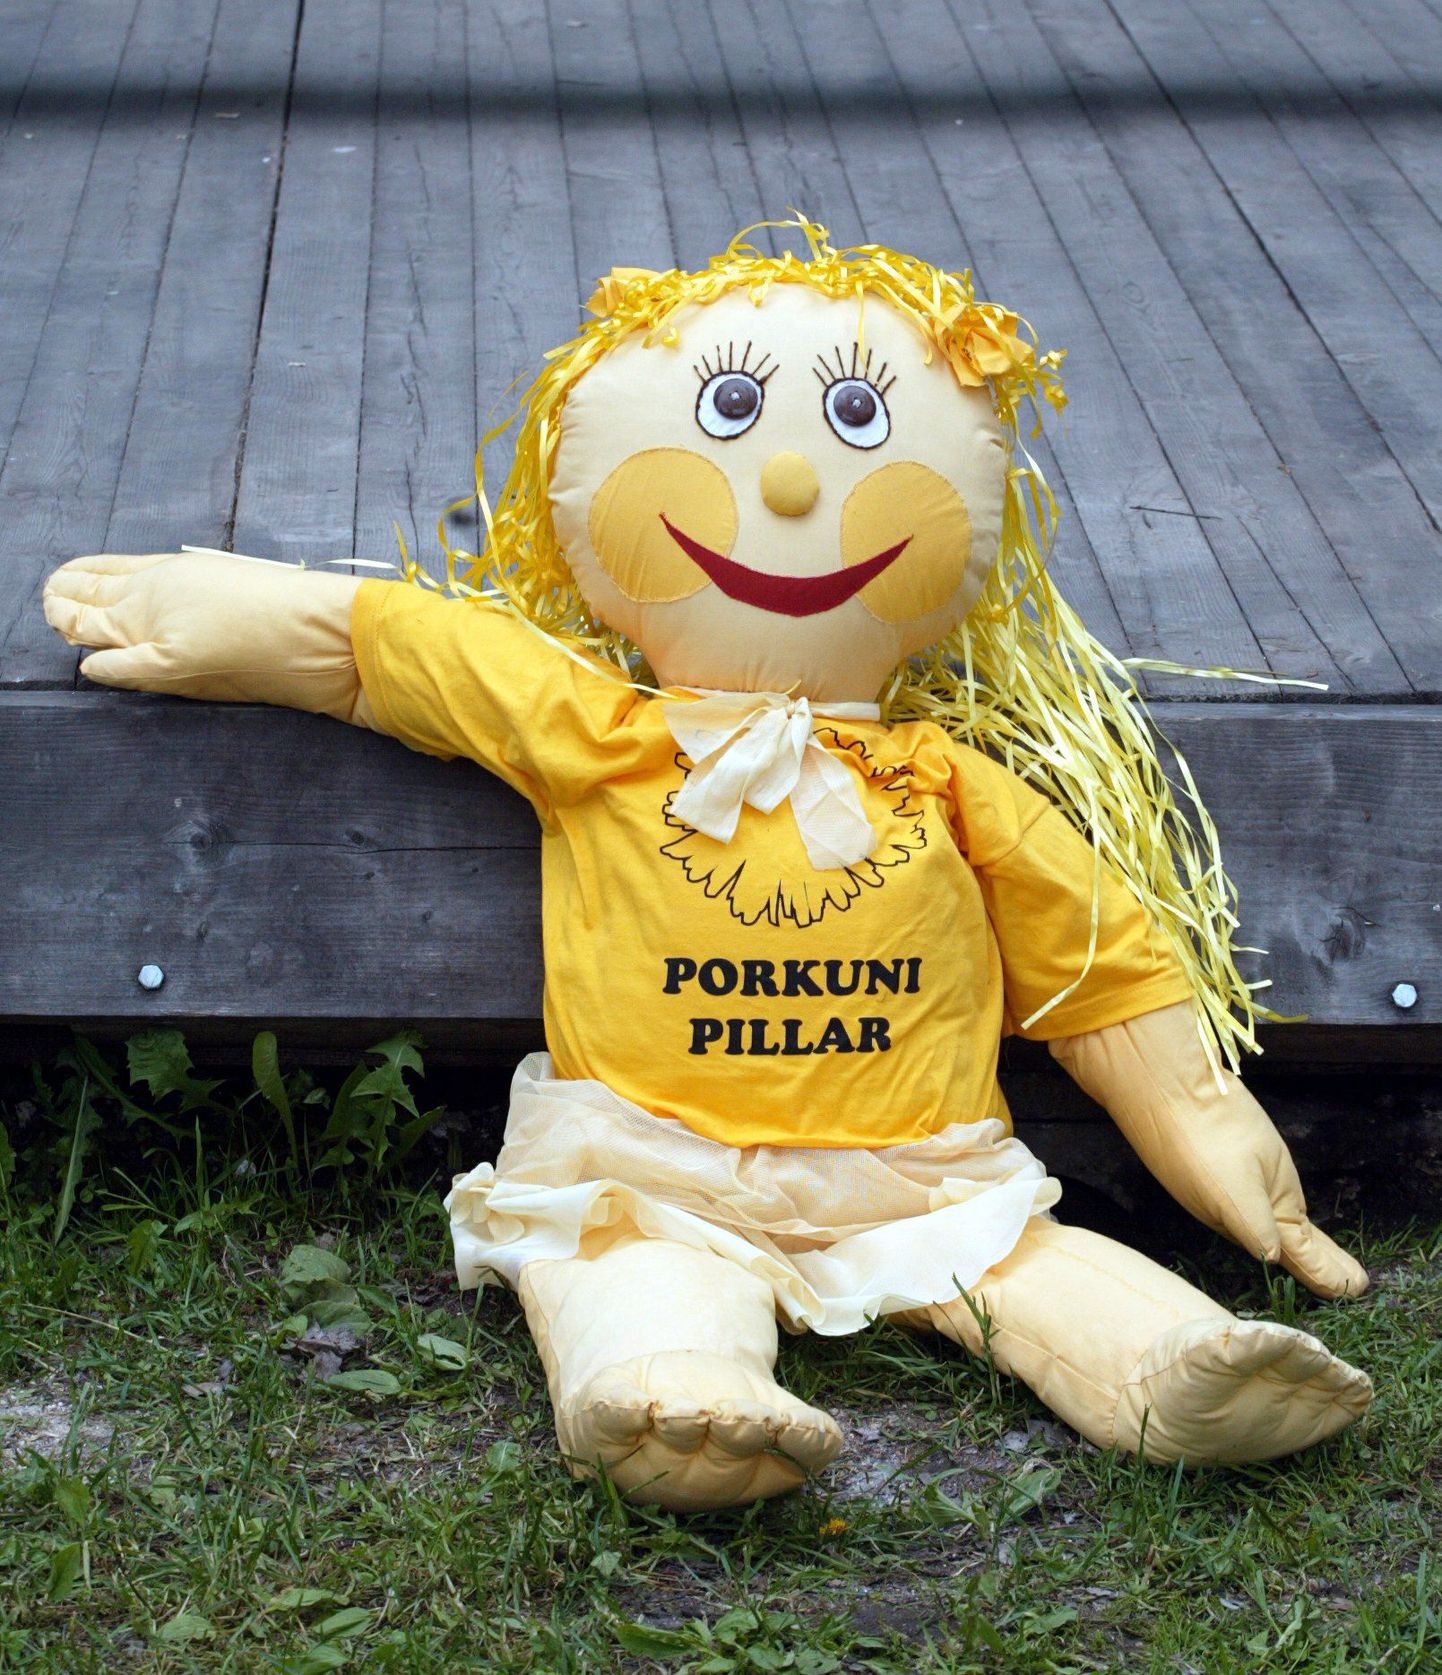 Laste folkloorifestival Porkuni Pillar toimub sel nädalavahetusel.